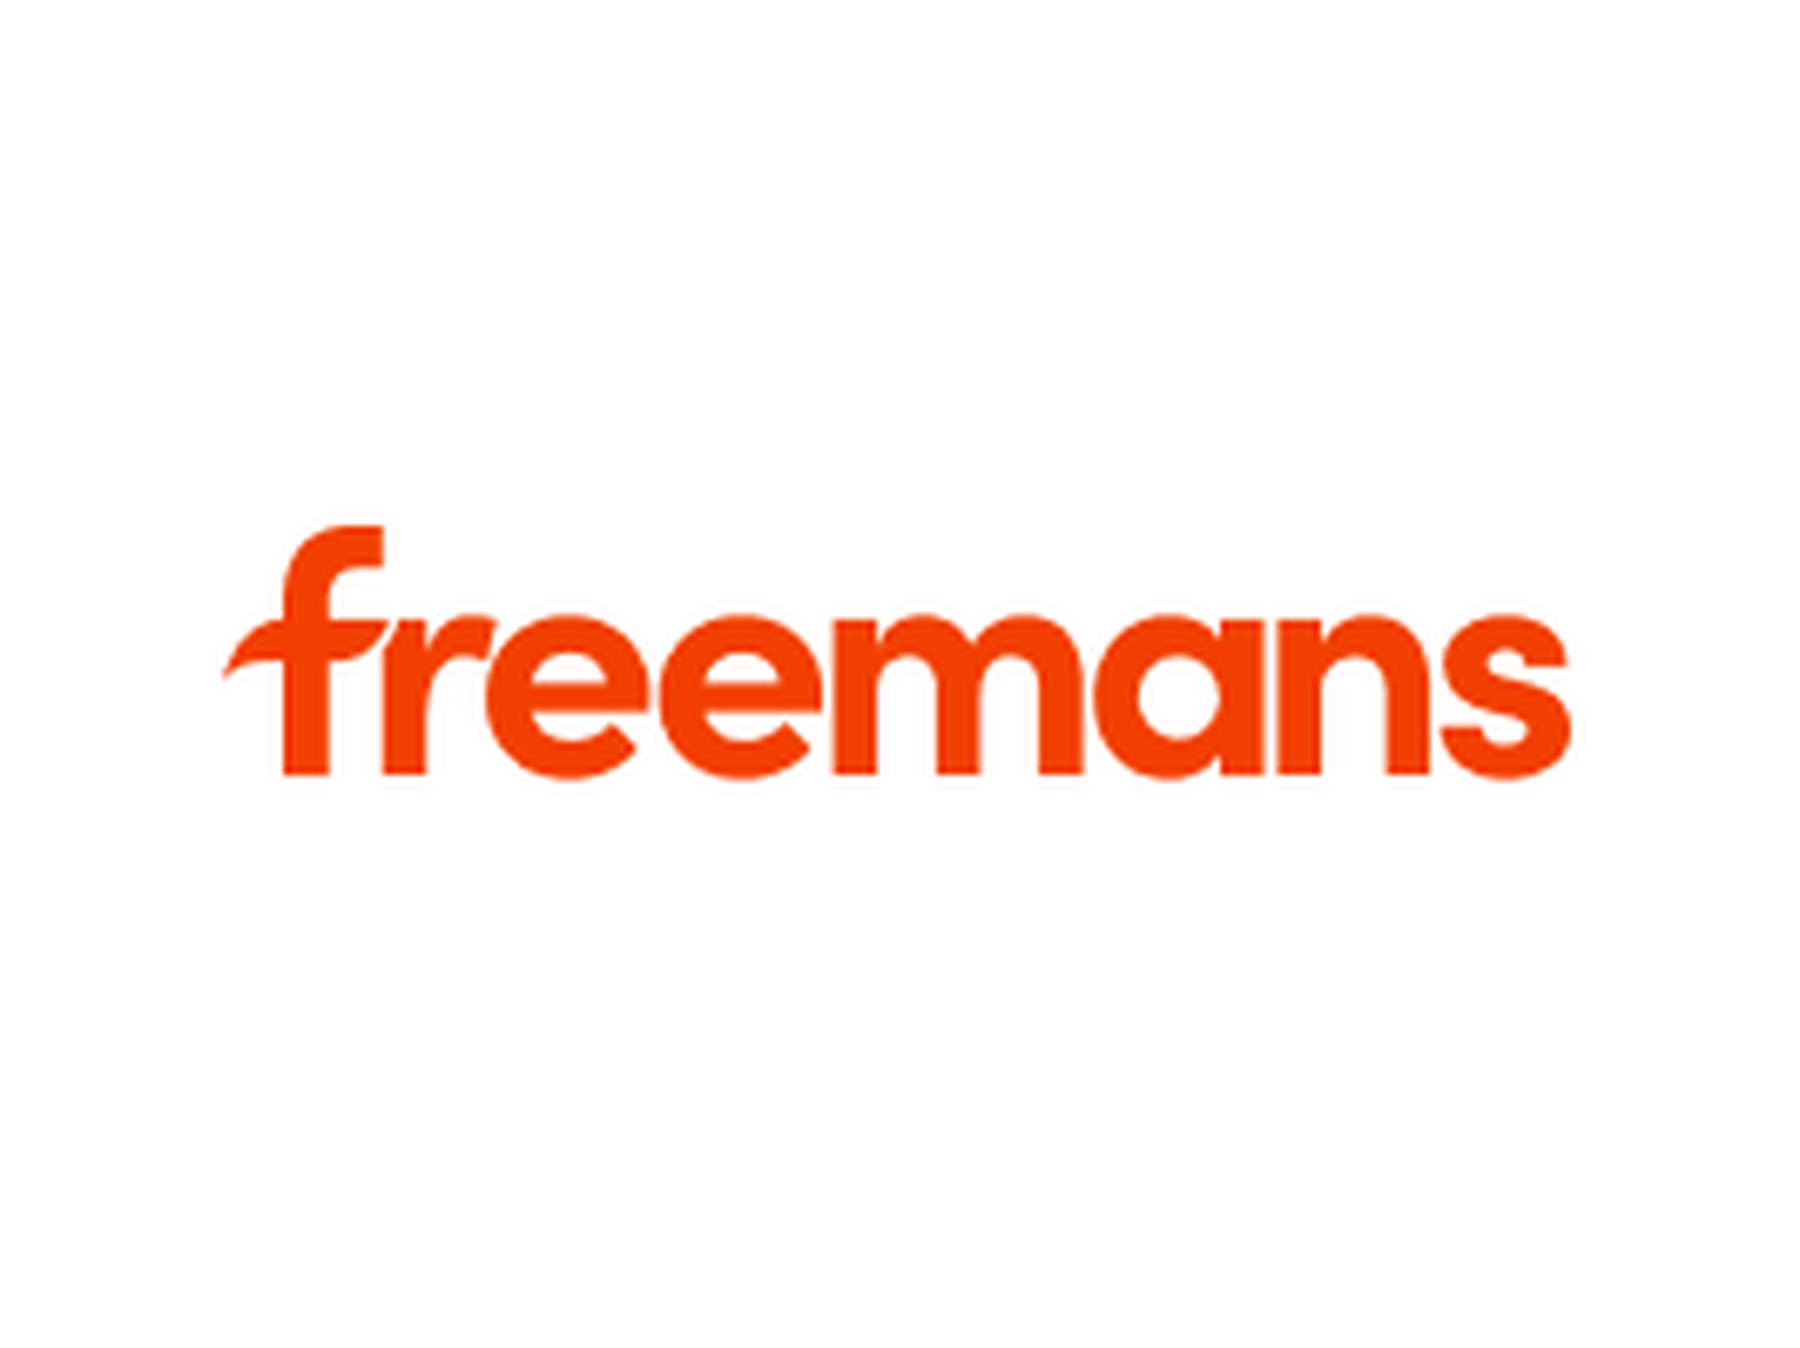 Freemans discount code